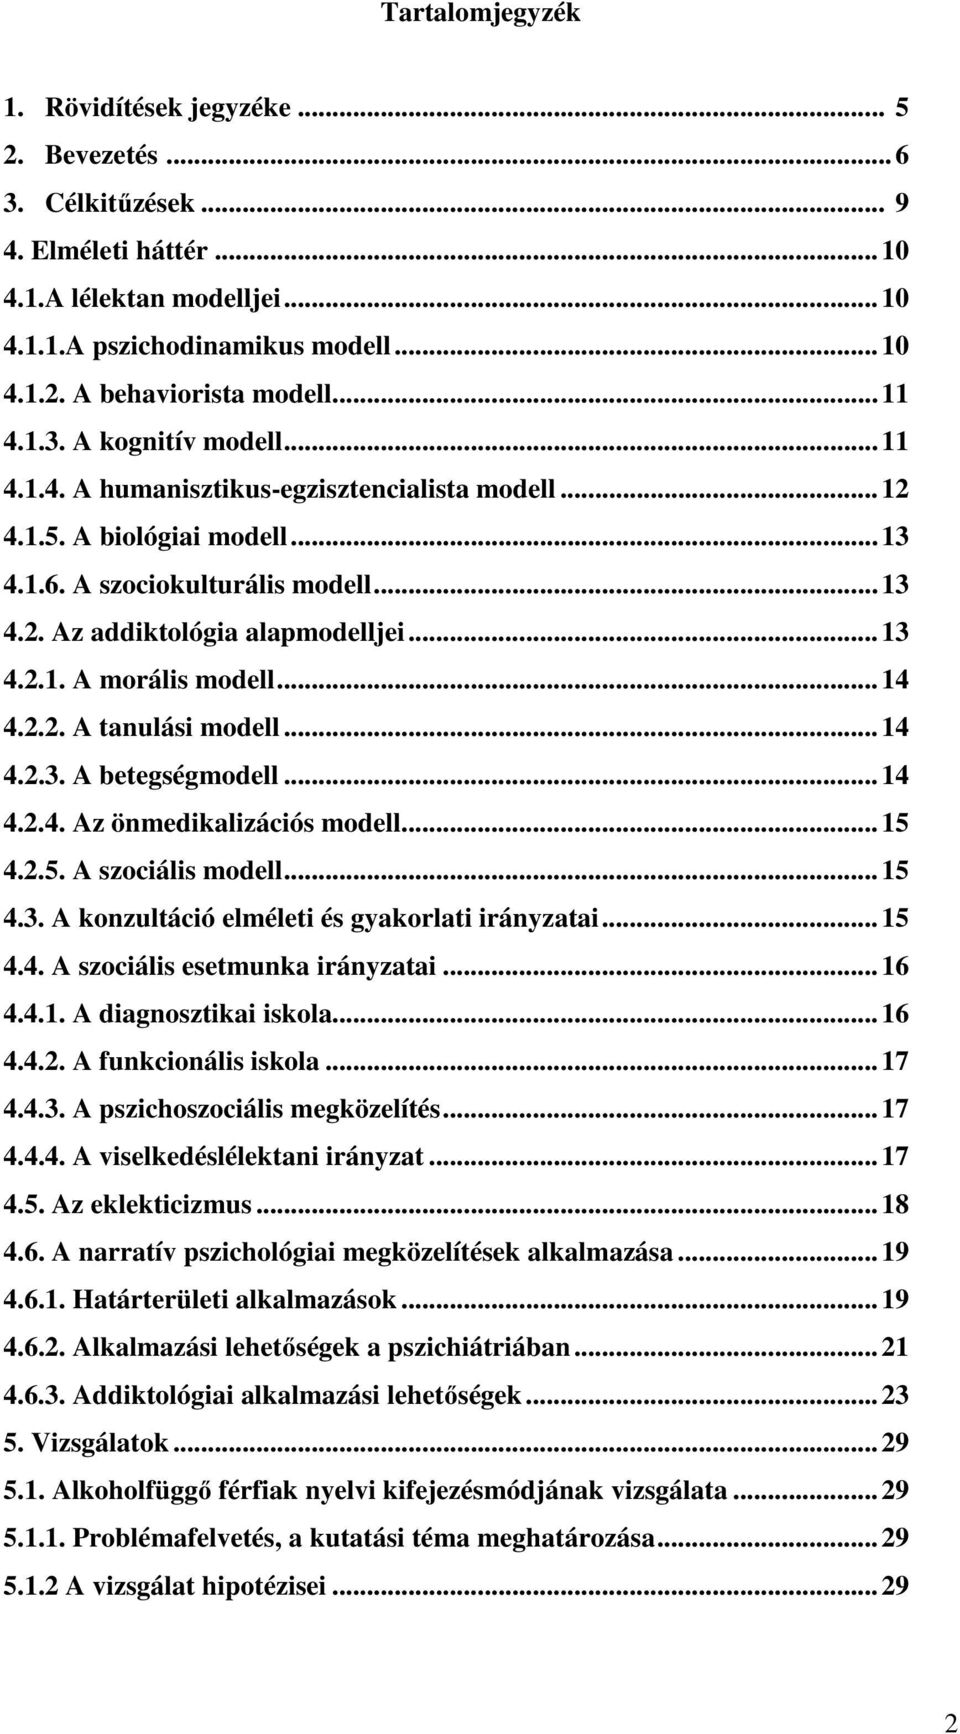 ..14 4.2.2. A tanulási modell...14 4.2.3. A betegségmodell...14 4.2.4. Az önmedikalizációs modell...15 4.2.5. A szociális modell...15 4.3. A konzultáció elméleti és gyakorlati irányzatai...15 4.4. A szociális esetmunka irányzatai.